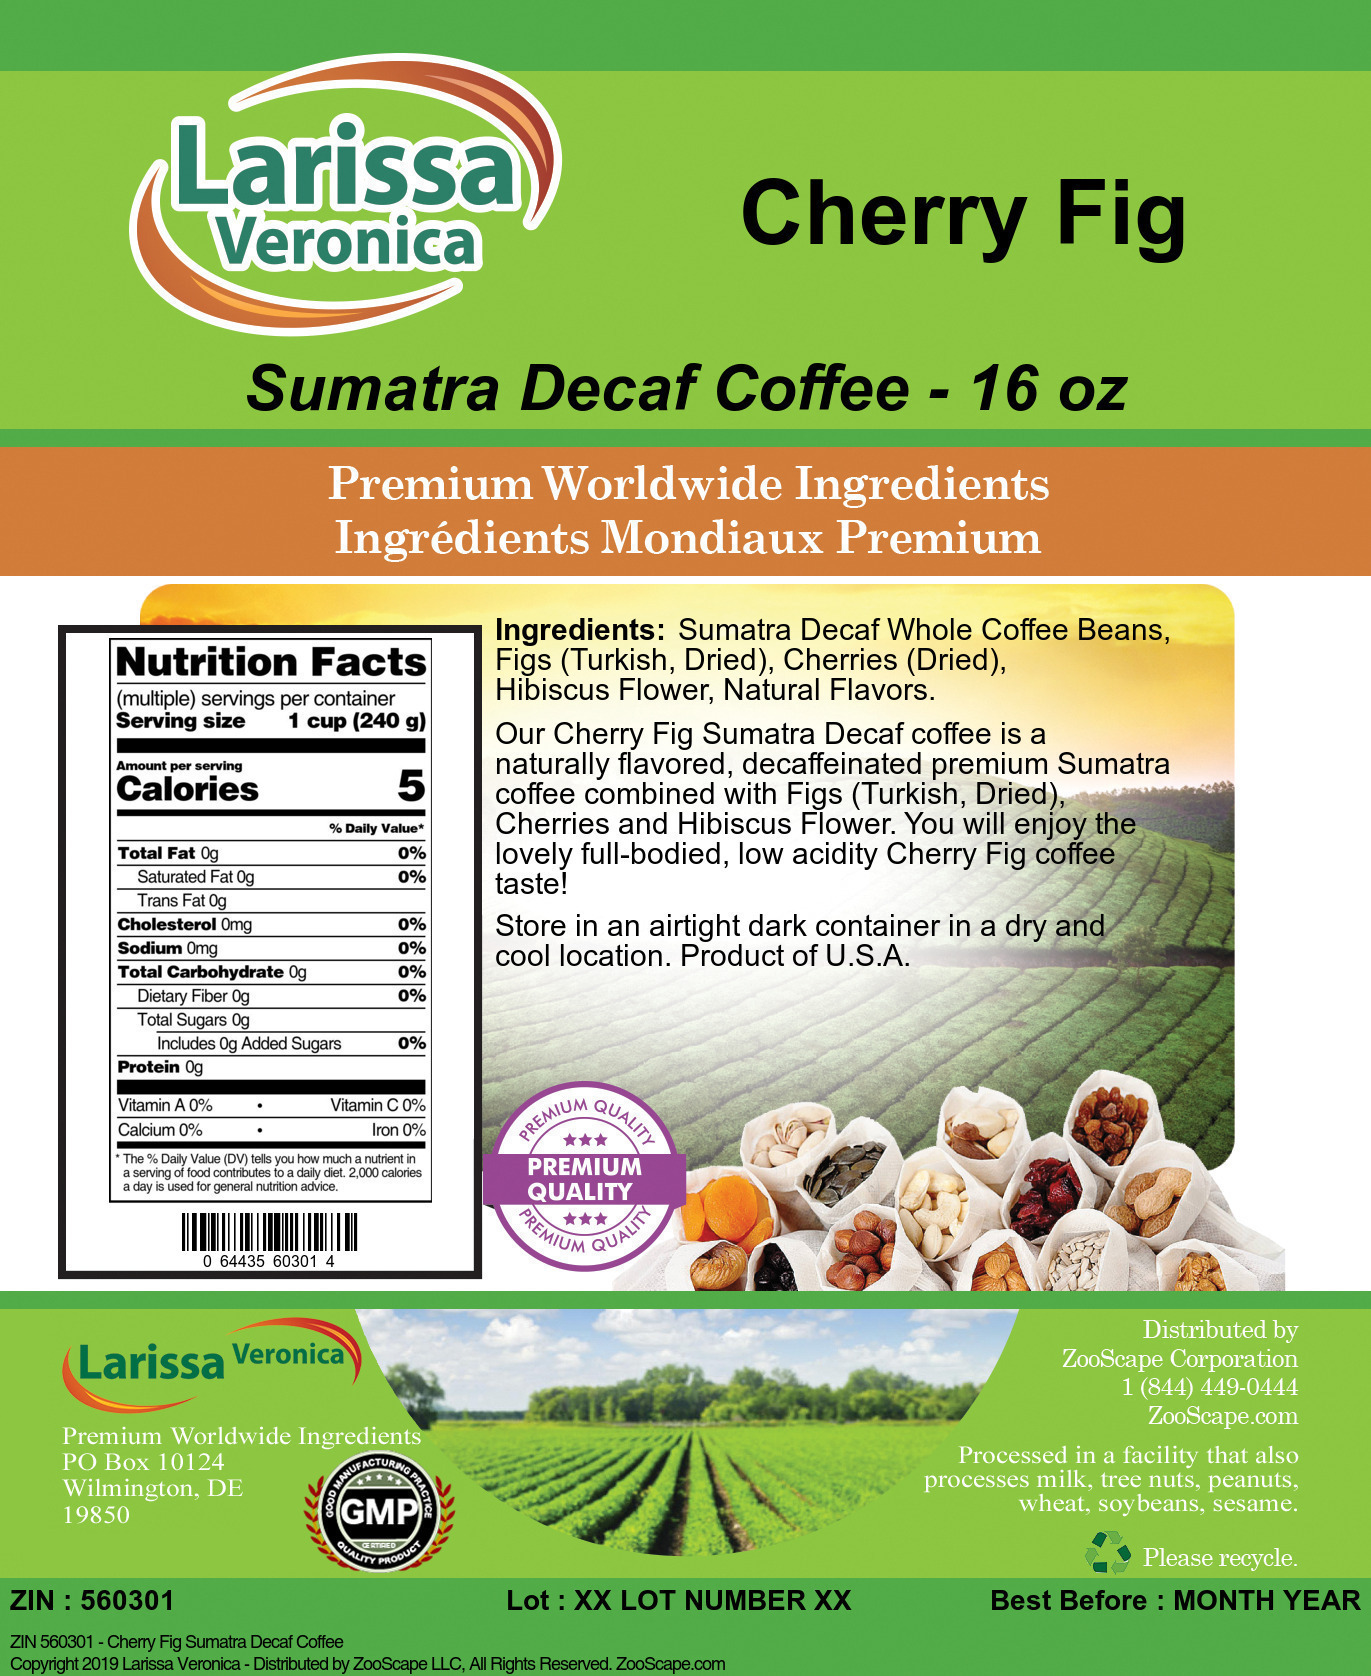 Cherry Fig Sumatra Decaf Coffee - Label